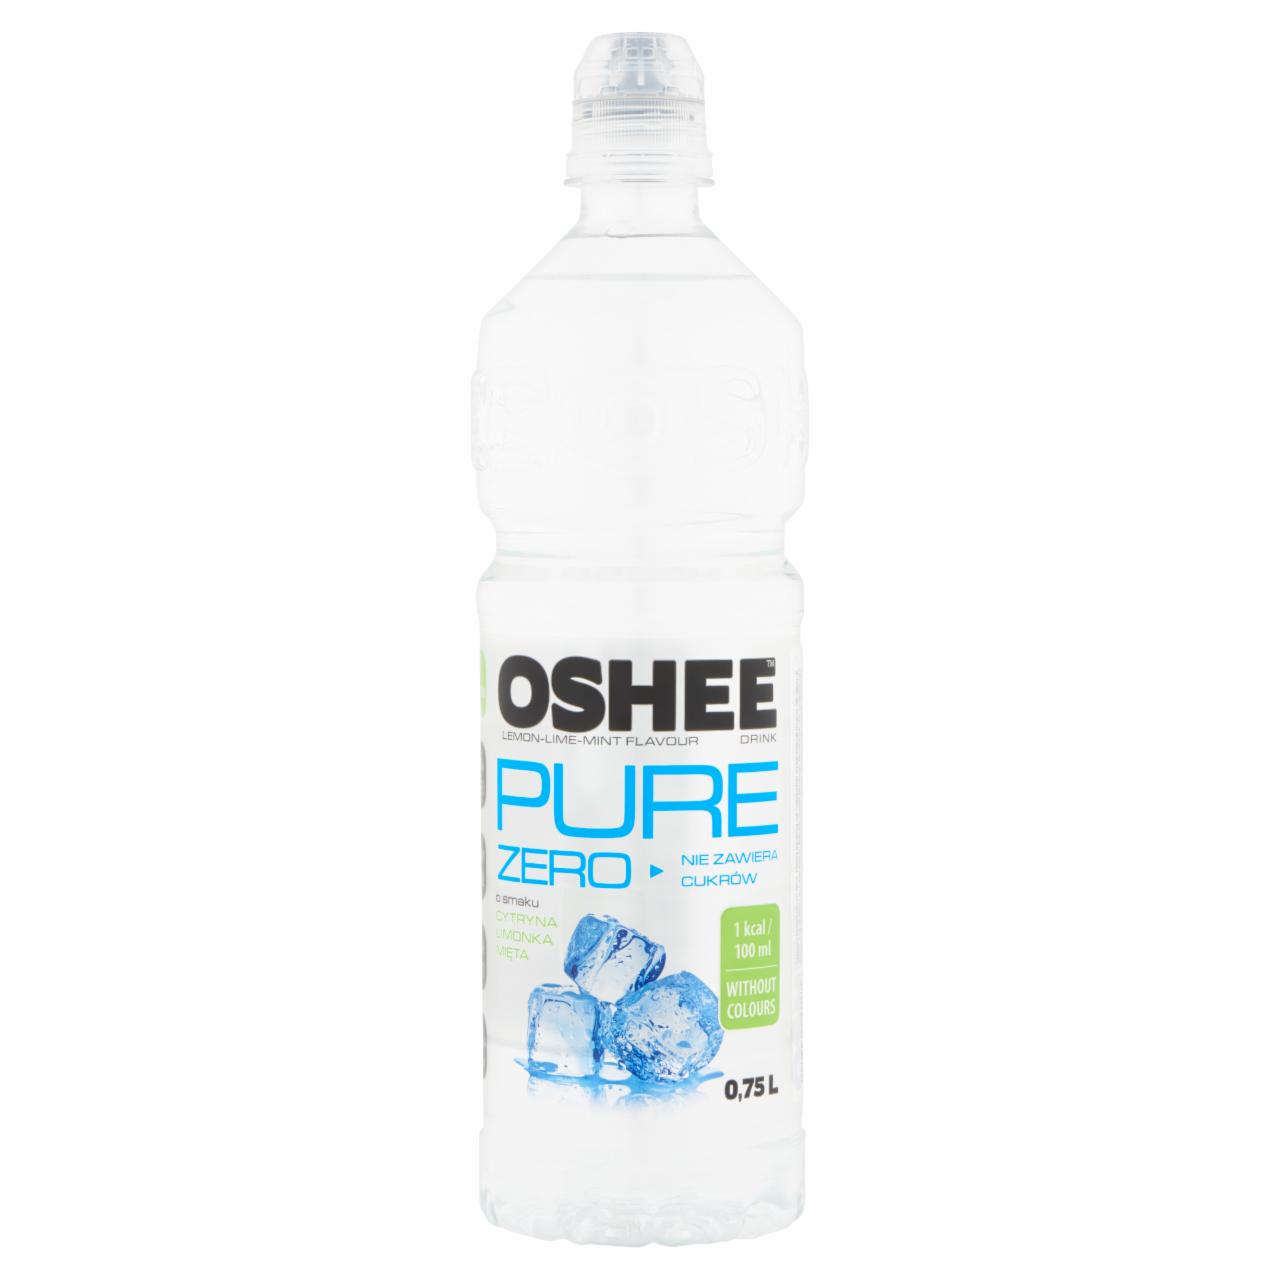 Képek - Oshee szénsavmentes citrom-lime-menta ízesítésű ital hozzáadott vitaminokkal 0,75 l